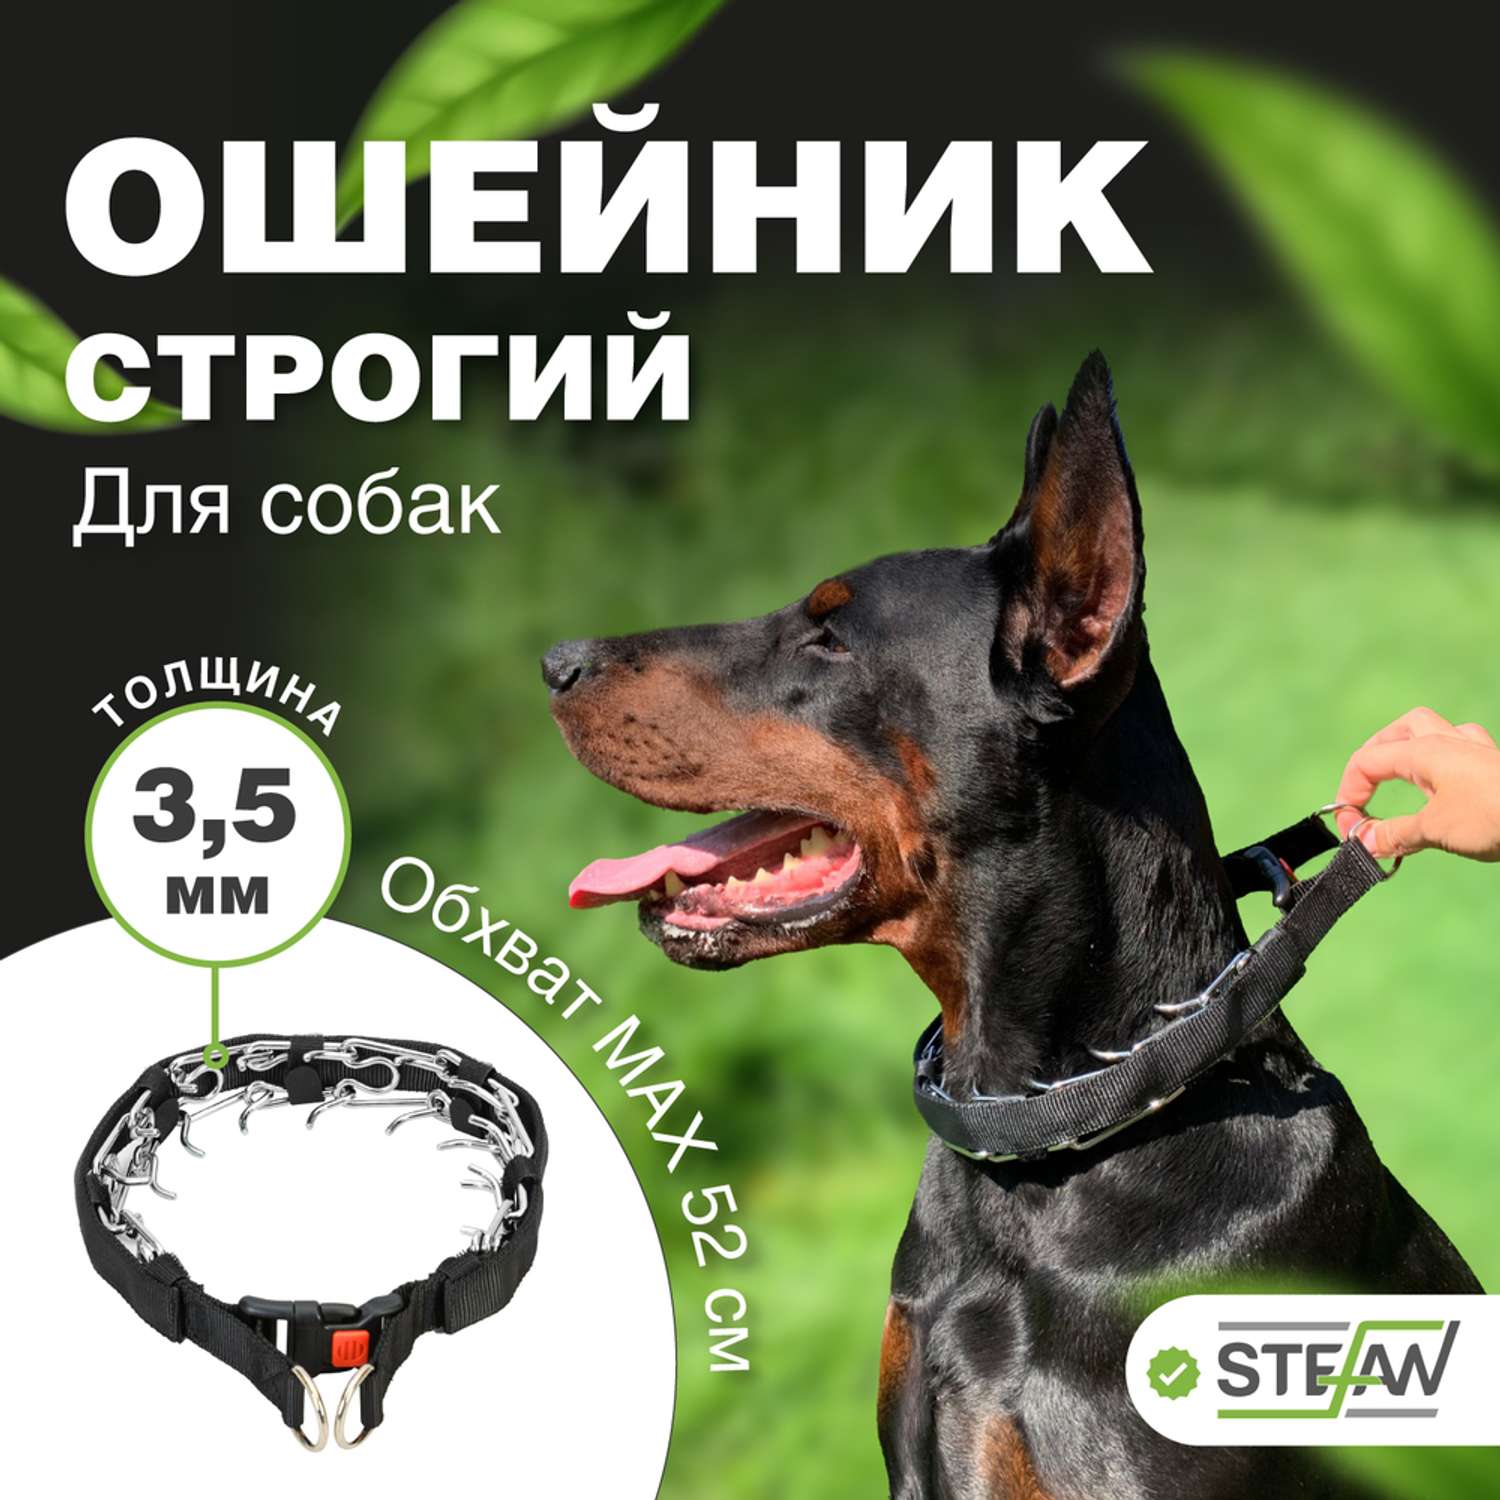 Ошейник для собак Stefan строгий XL 40X60 пластиковый карабин с предохранителем - фото 1